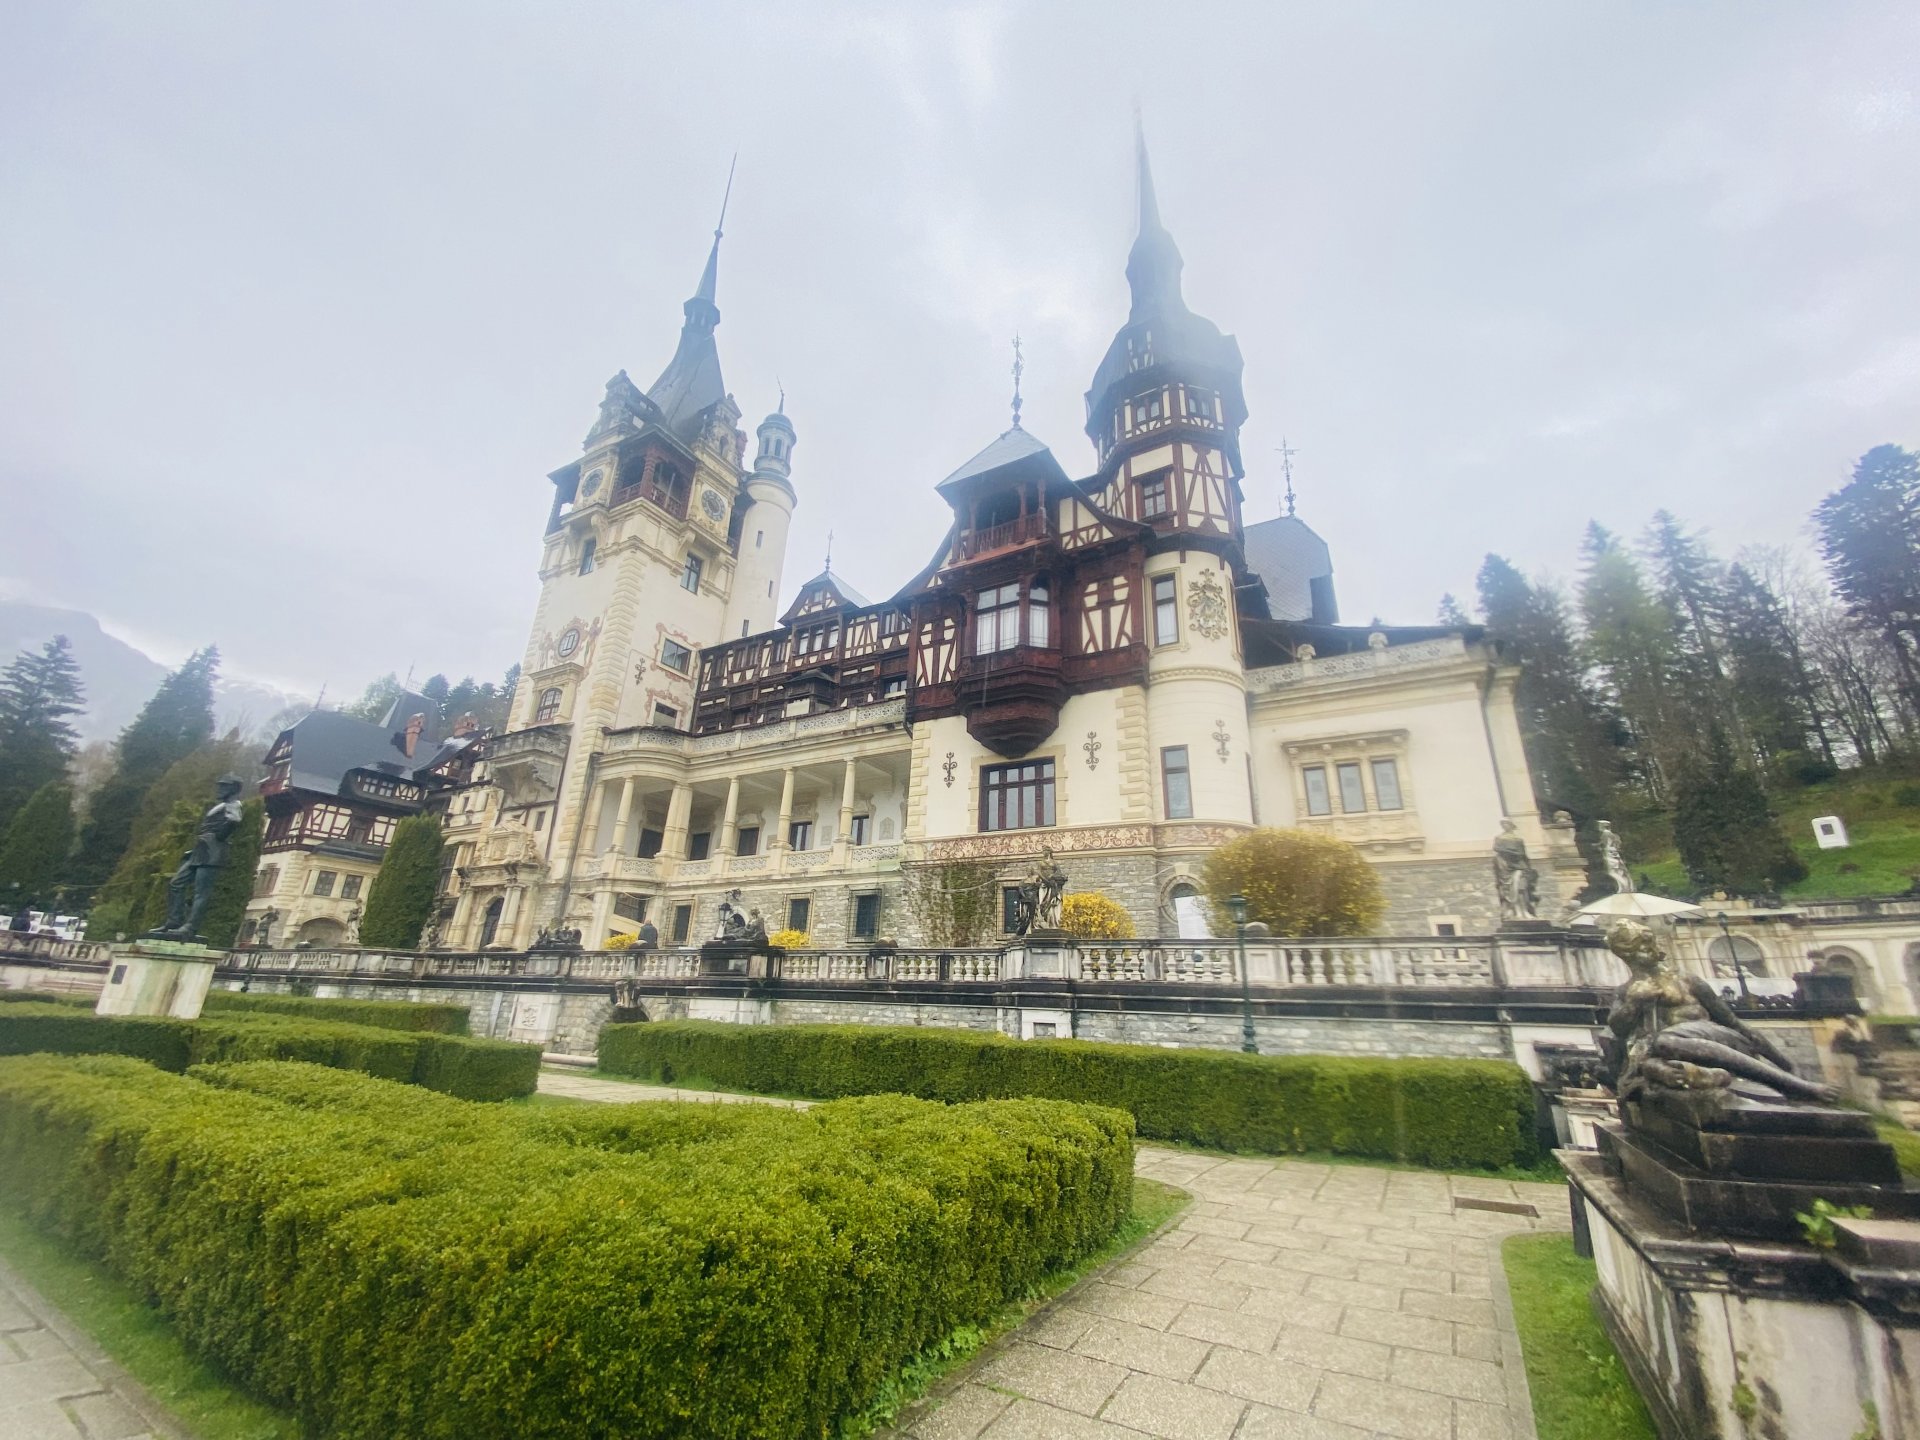 Замъкът Пелеш е разположен на средновековния път, свързващ историческите области Трансилвания и Влахия в Румъния, в подножието на Карпатите, в покрайнините на град Синая. Замъкът е построен в стил неоренесанс между 1873 и 1914 г. Наречен е по името на протичащата наблизо планинска река.